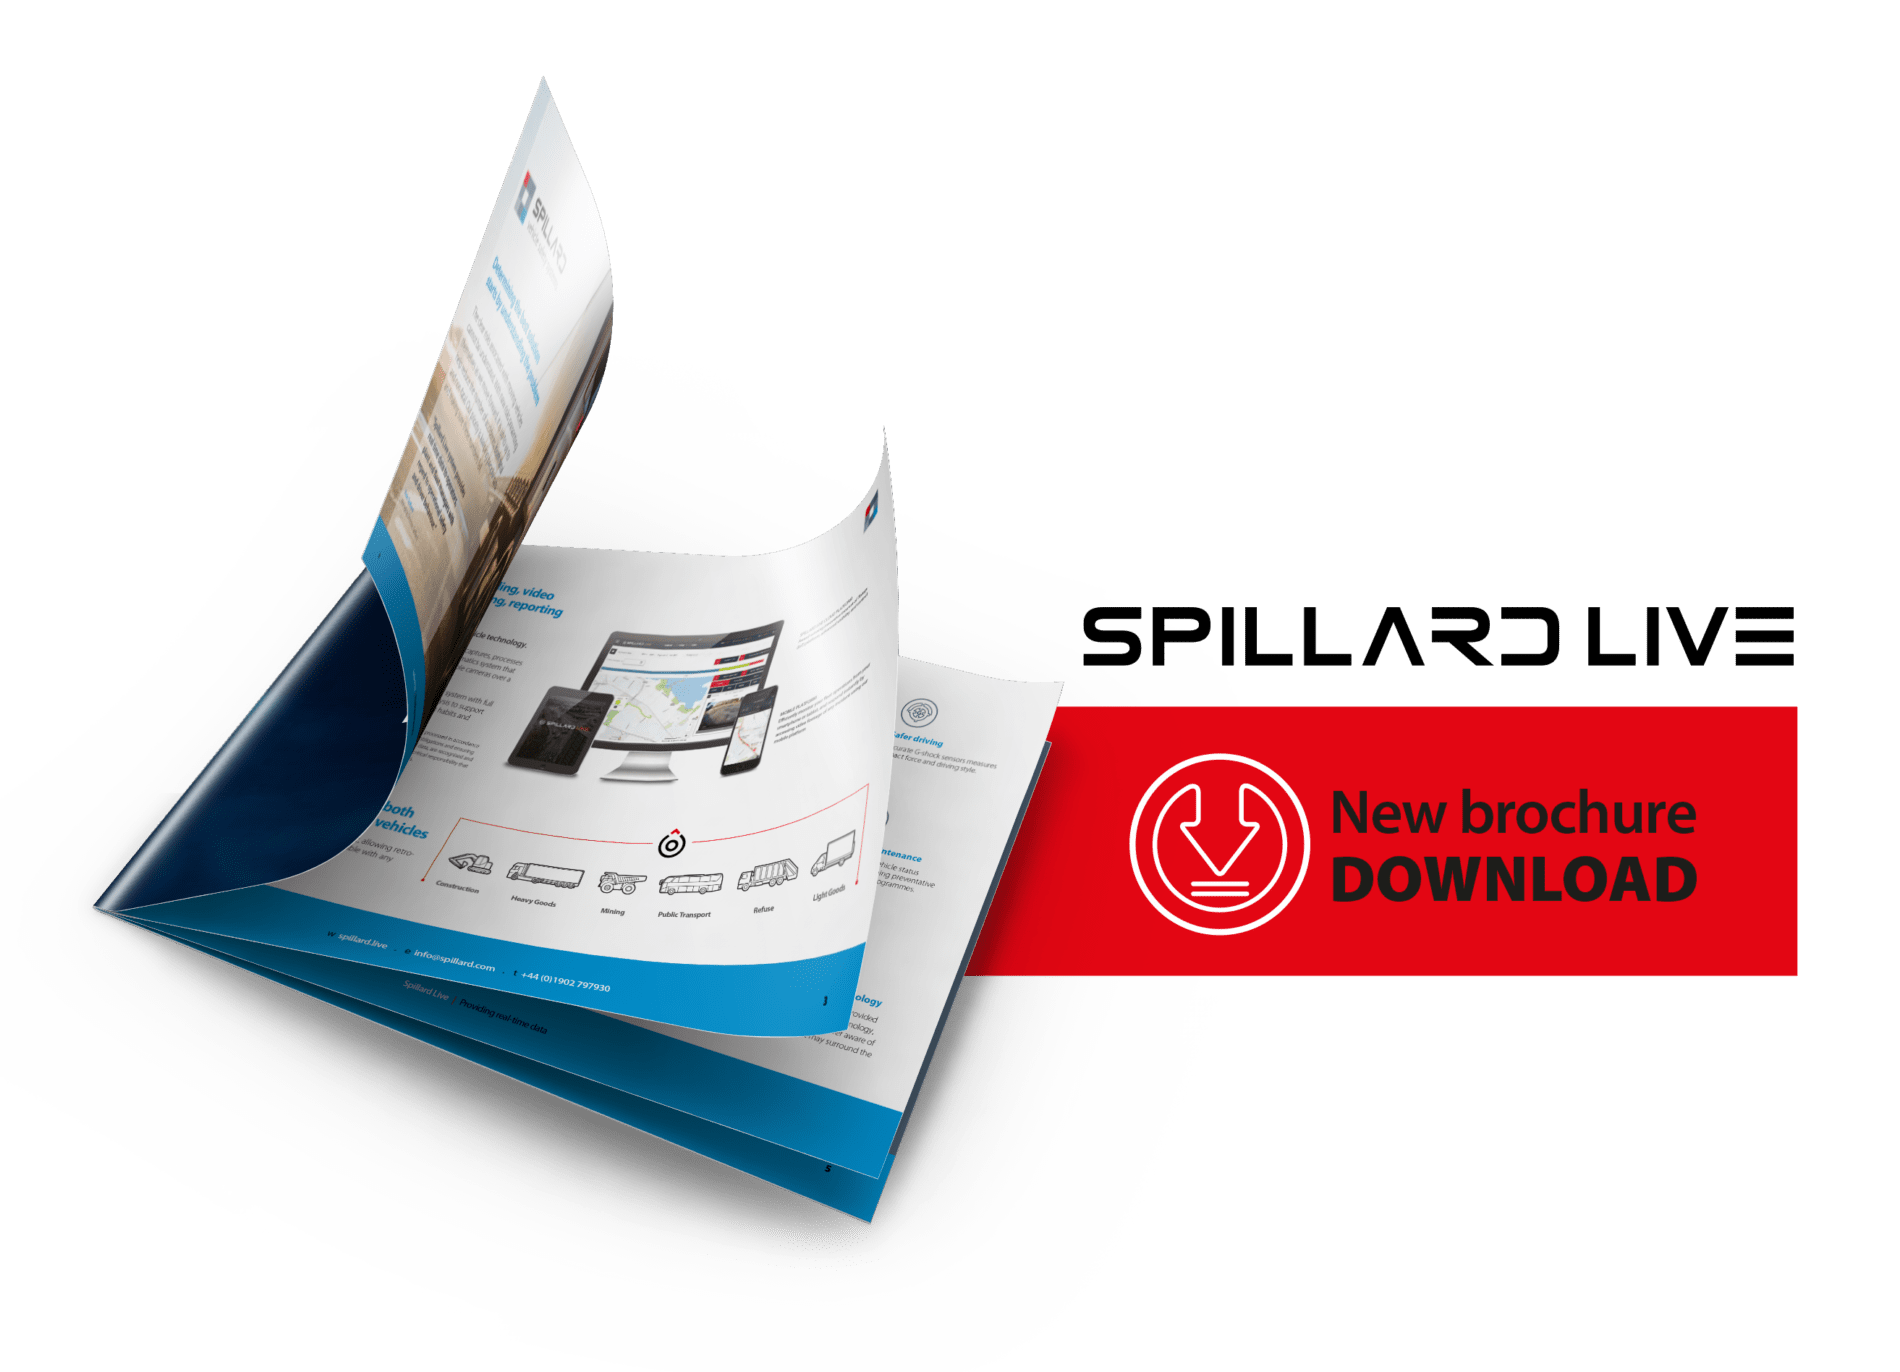 Spillard Live - A4 Spillard LIVE brochure visual